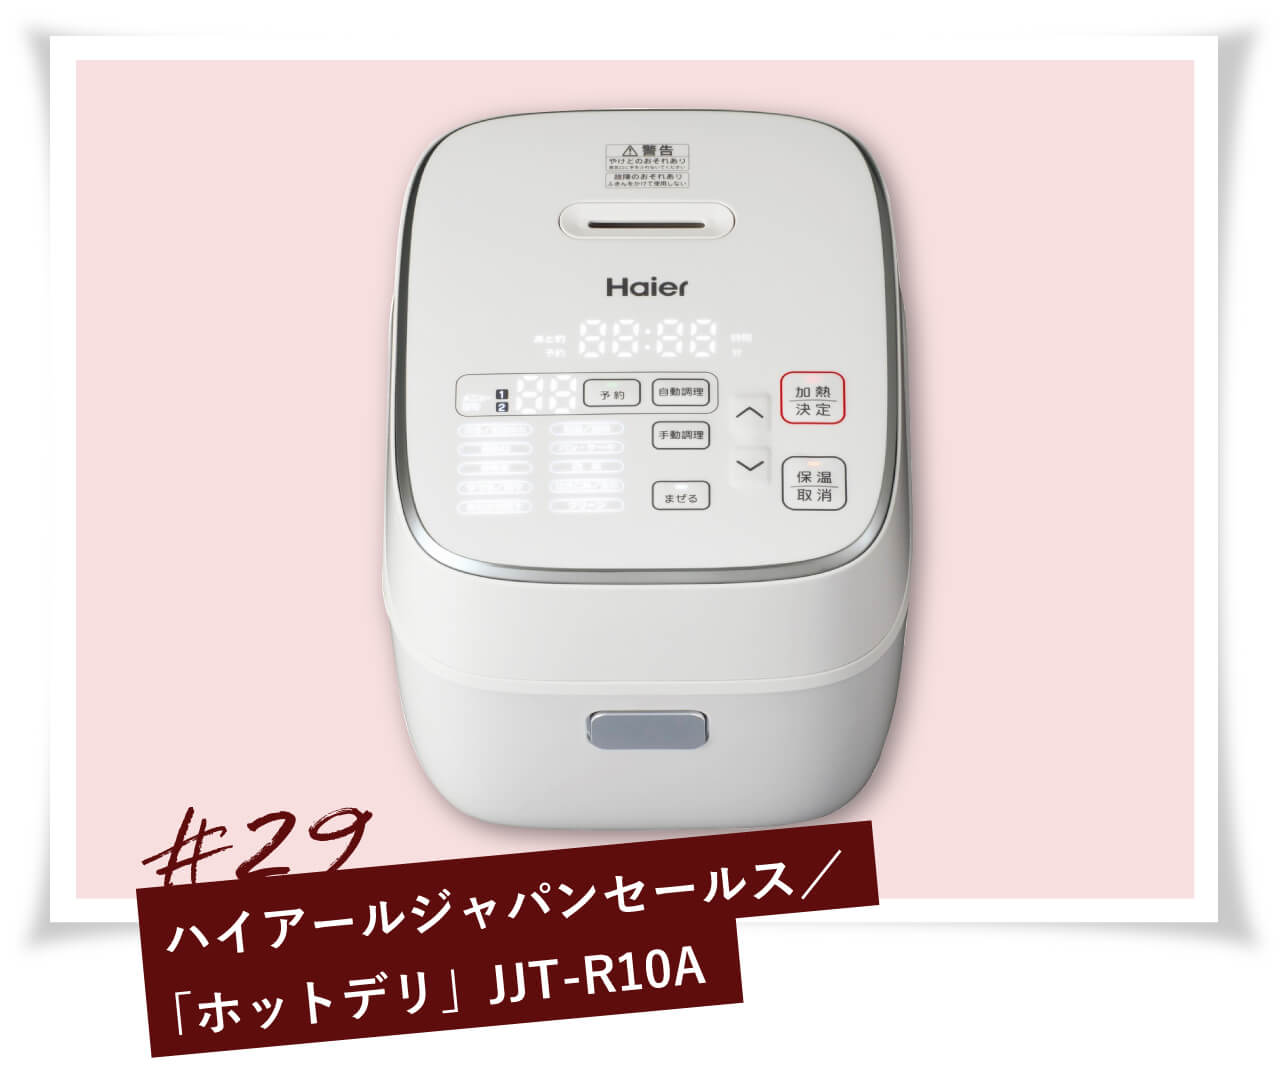 ハイアールジャパンセールス「ホットデリ」JJT-R10A